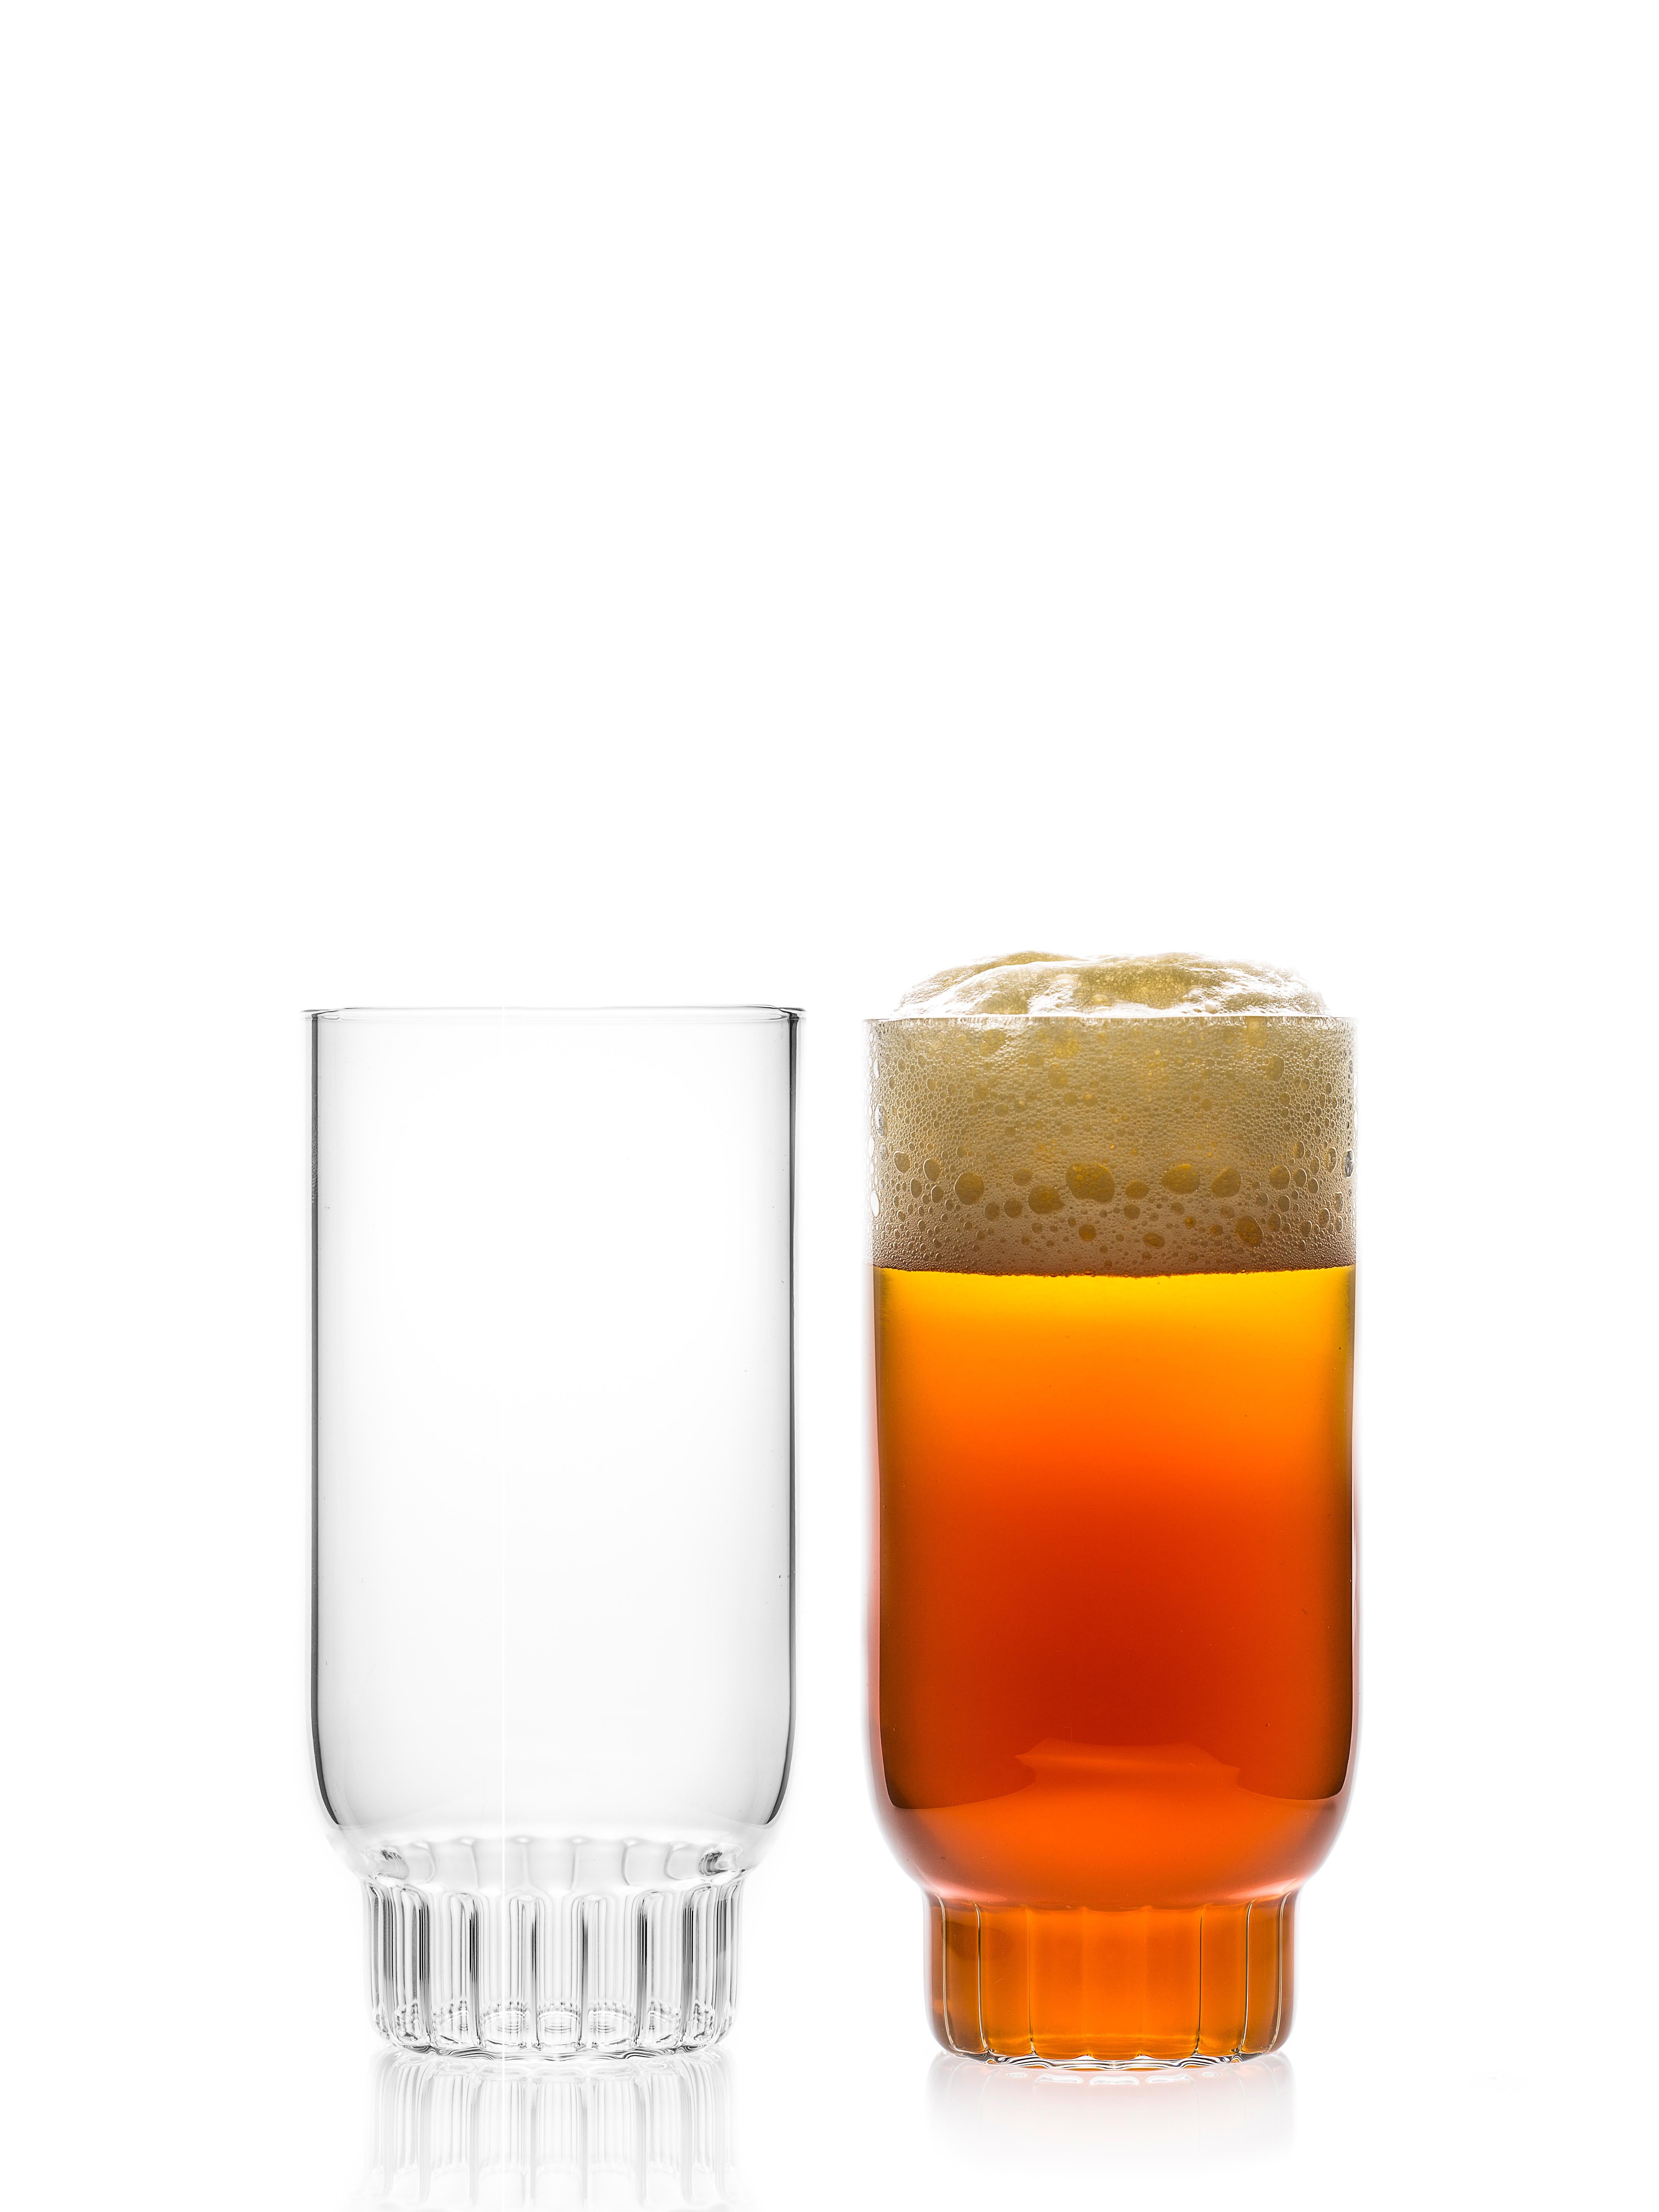 Rasori große Highball-Gläser - Satz mit zwei Gläsern.

Wie die Lieblingsstraße der Designerin in Mailand, ihrer zweiten Heimat, sind die klaren, tschechischen, zeitgenössischen Gläser Rasori Large eine spielerische und delikate Kombination aus